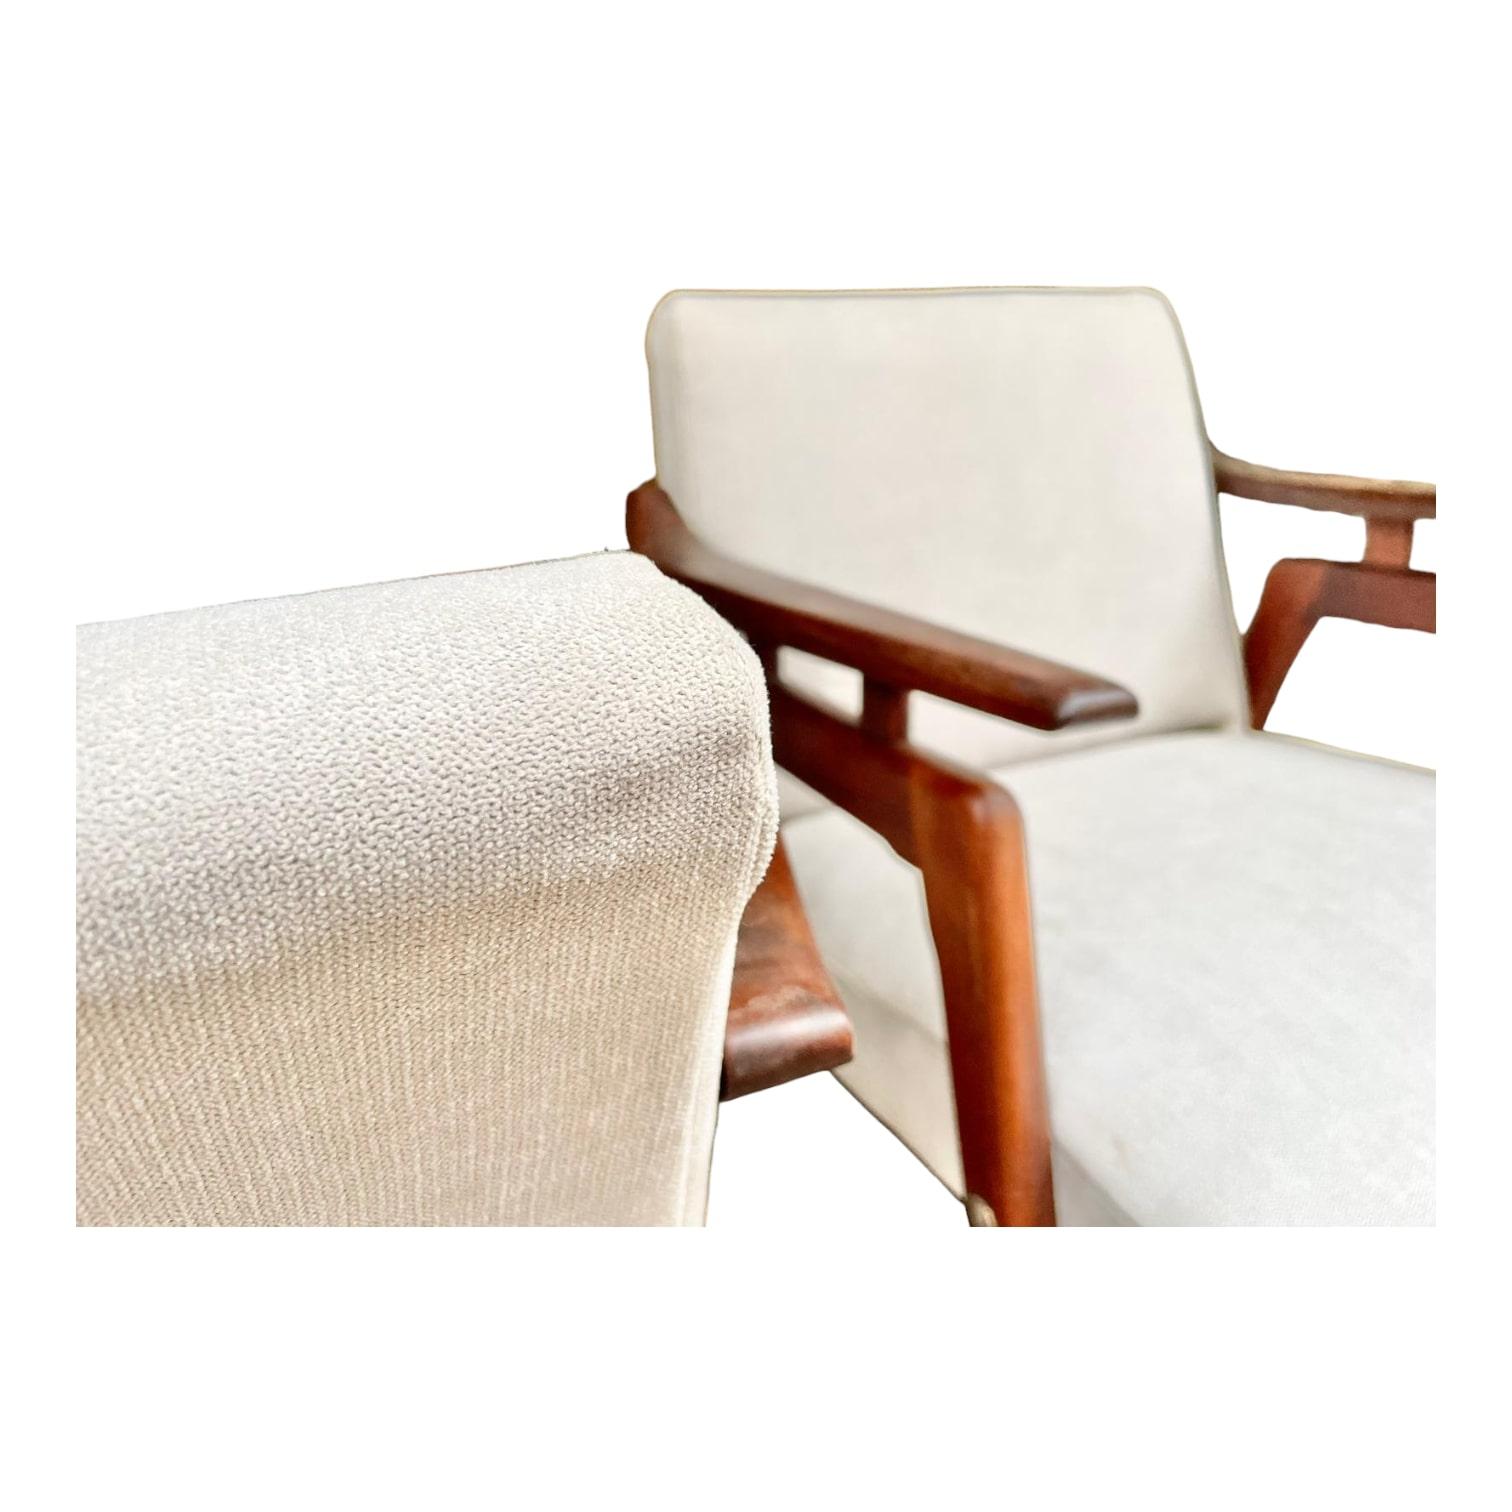 Dieses prächtige dänische Sesselpaar aus den 1960er Jahren ist ein einzigartiges Sammlerstück. Sein zeitloses Design und die Sitzhöhe von 39 cm machen ihn zu einem ebenso eleganten wie bequemen Möbelstück. Die detaillierten Bilder ermöglichen es